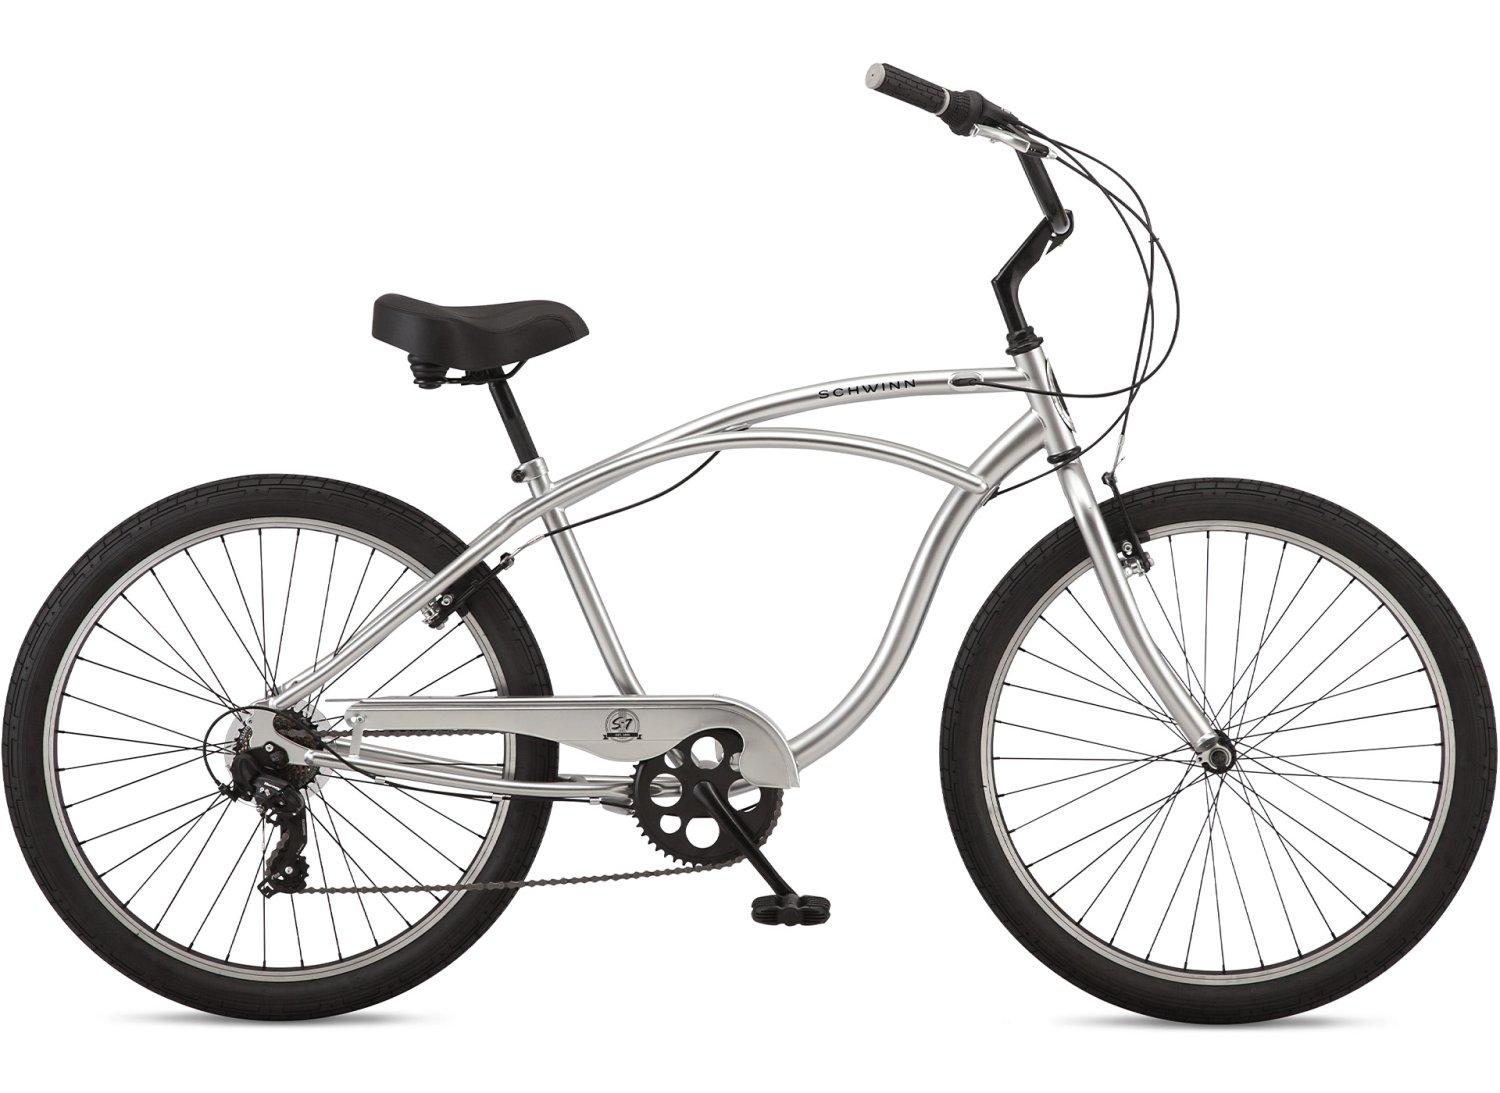 Городской велосипед SCHWINN S7 SLV, 7 скоростей, серый, S39851M20OS система шатунов велосипедная mighty 7 8 скоростей алюминий сталь 22 32 42 зуб шатуны 170мм серый 5 351237